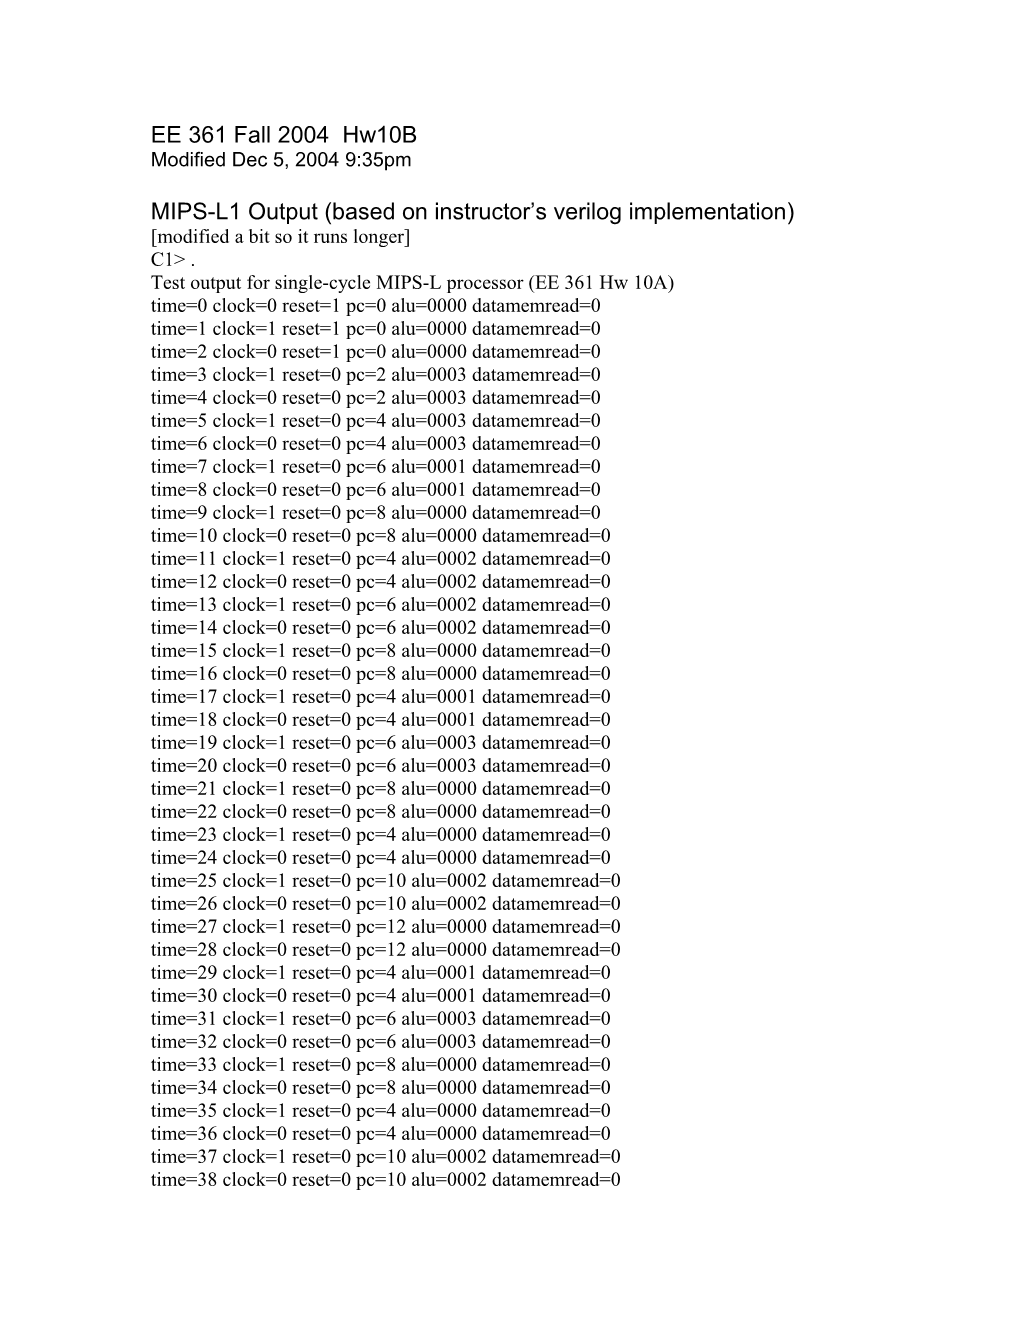 MIPS-L1 Output (Based on Instructor S Verilog Implementation)